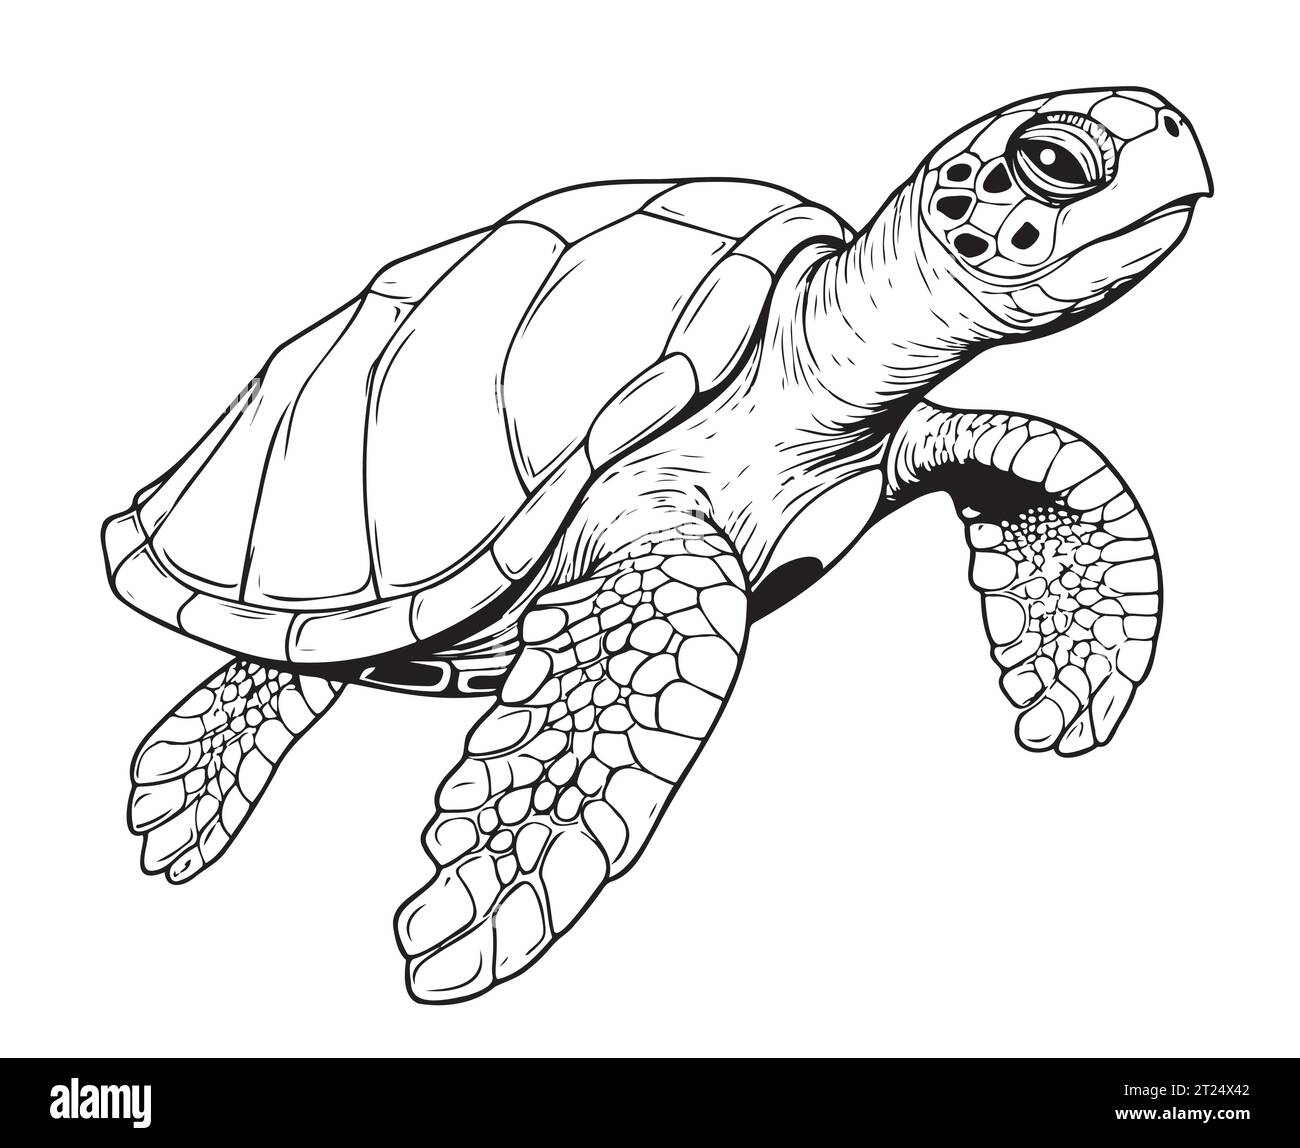 Croquis de reptile de tortue de mer dessiné à la main dans le vecteur graphique Illustration de Vecteur